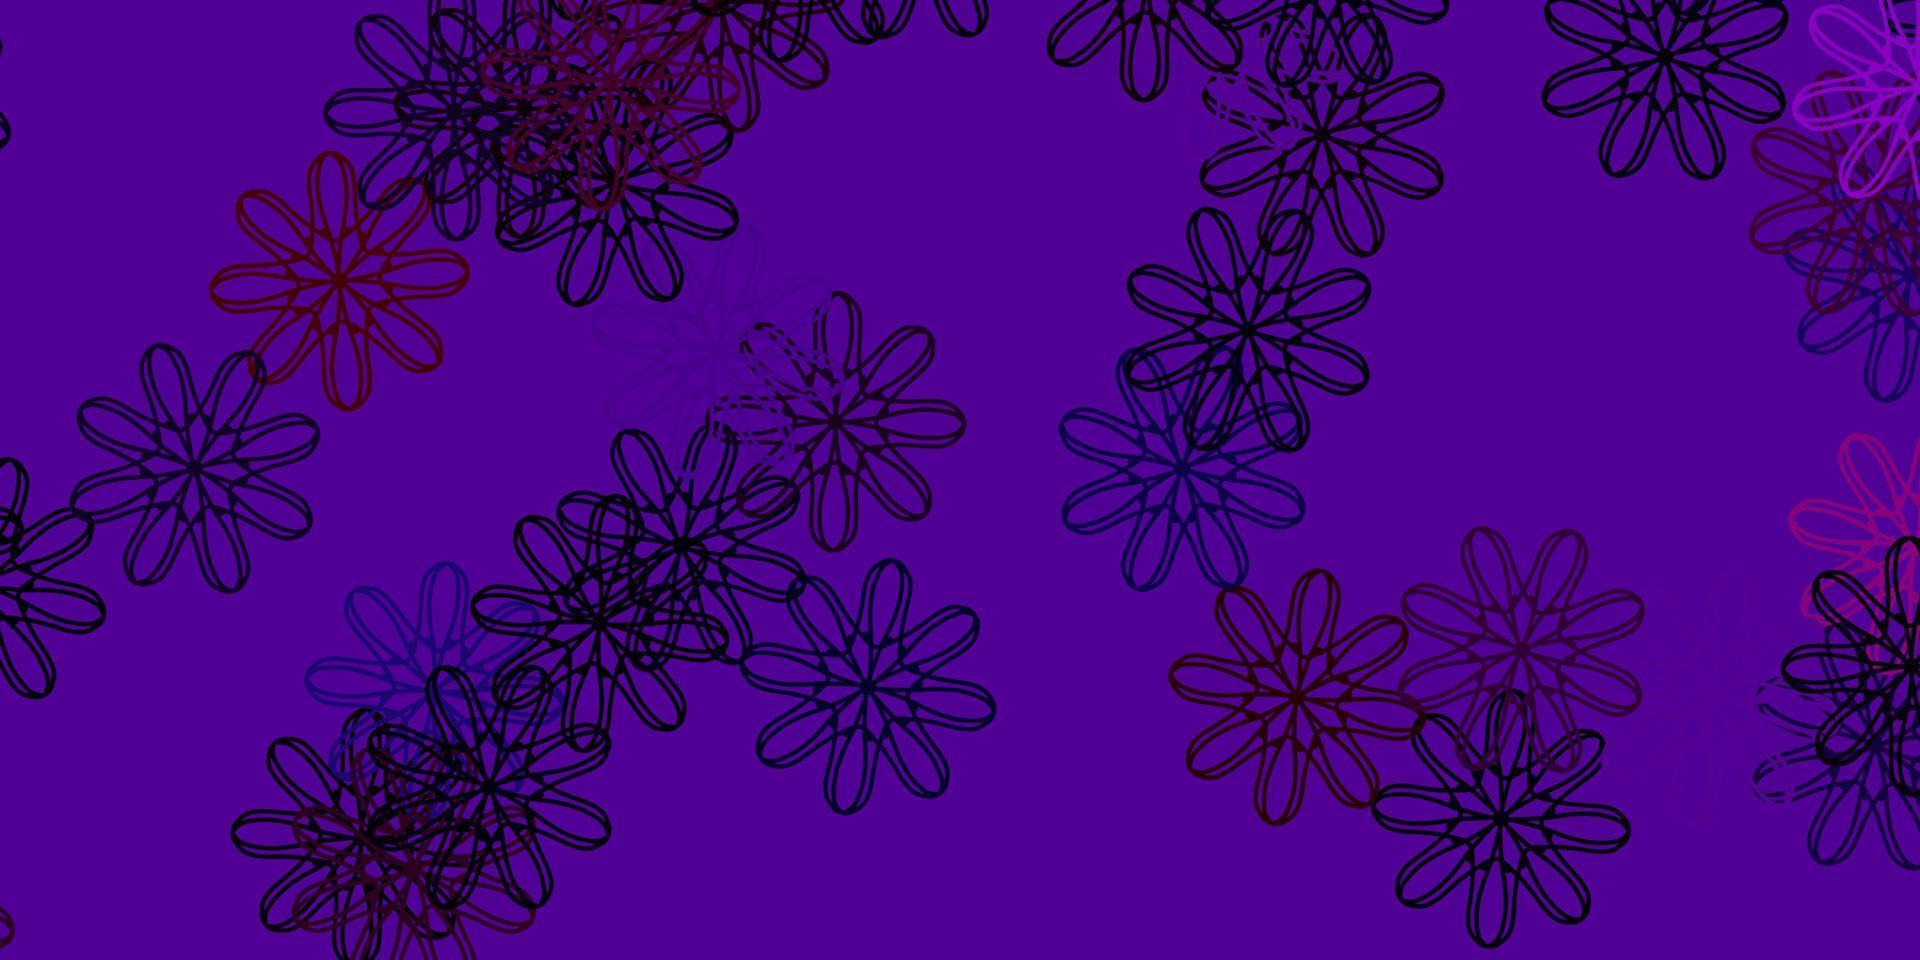 fundo do doodle do vetor azul e vermelho claro com flores.